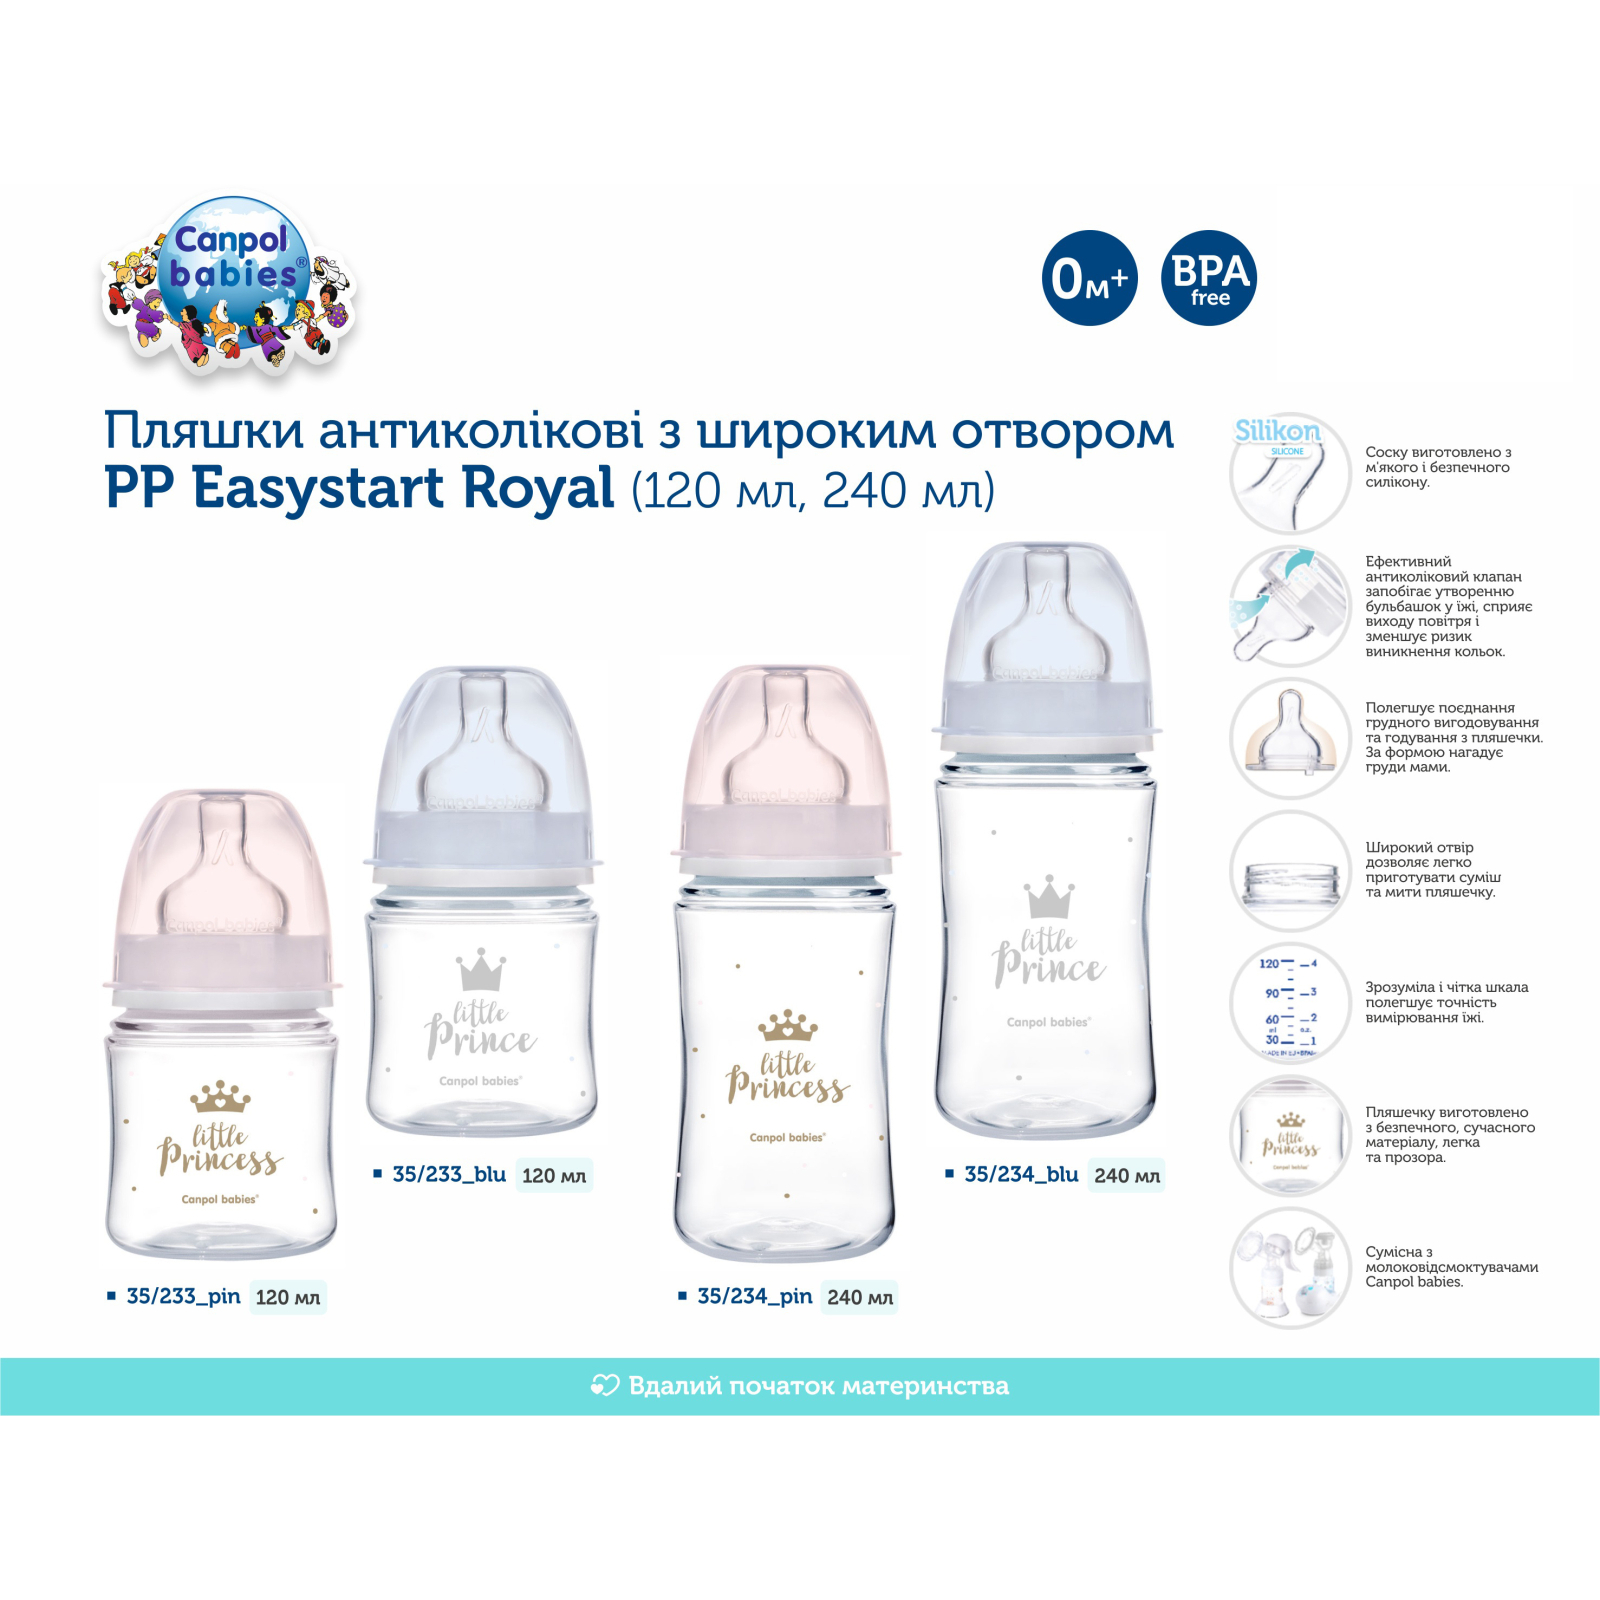 Бутылочка для кормления Canpol babies Royal Baby с широким отверстием 120 мл Синяя (35/233_blu) изображение 4